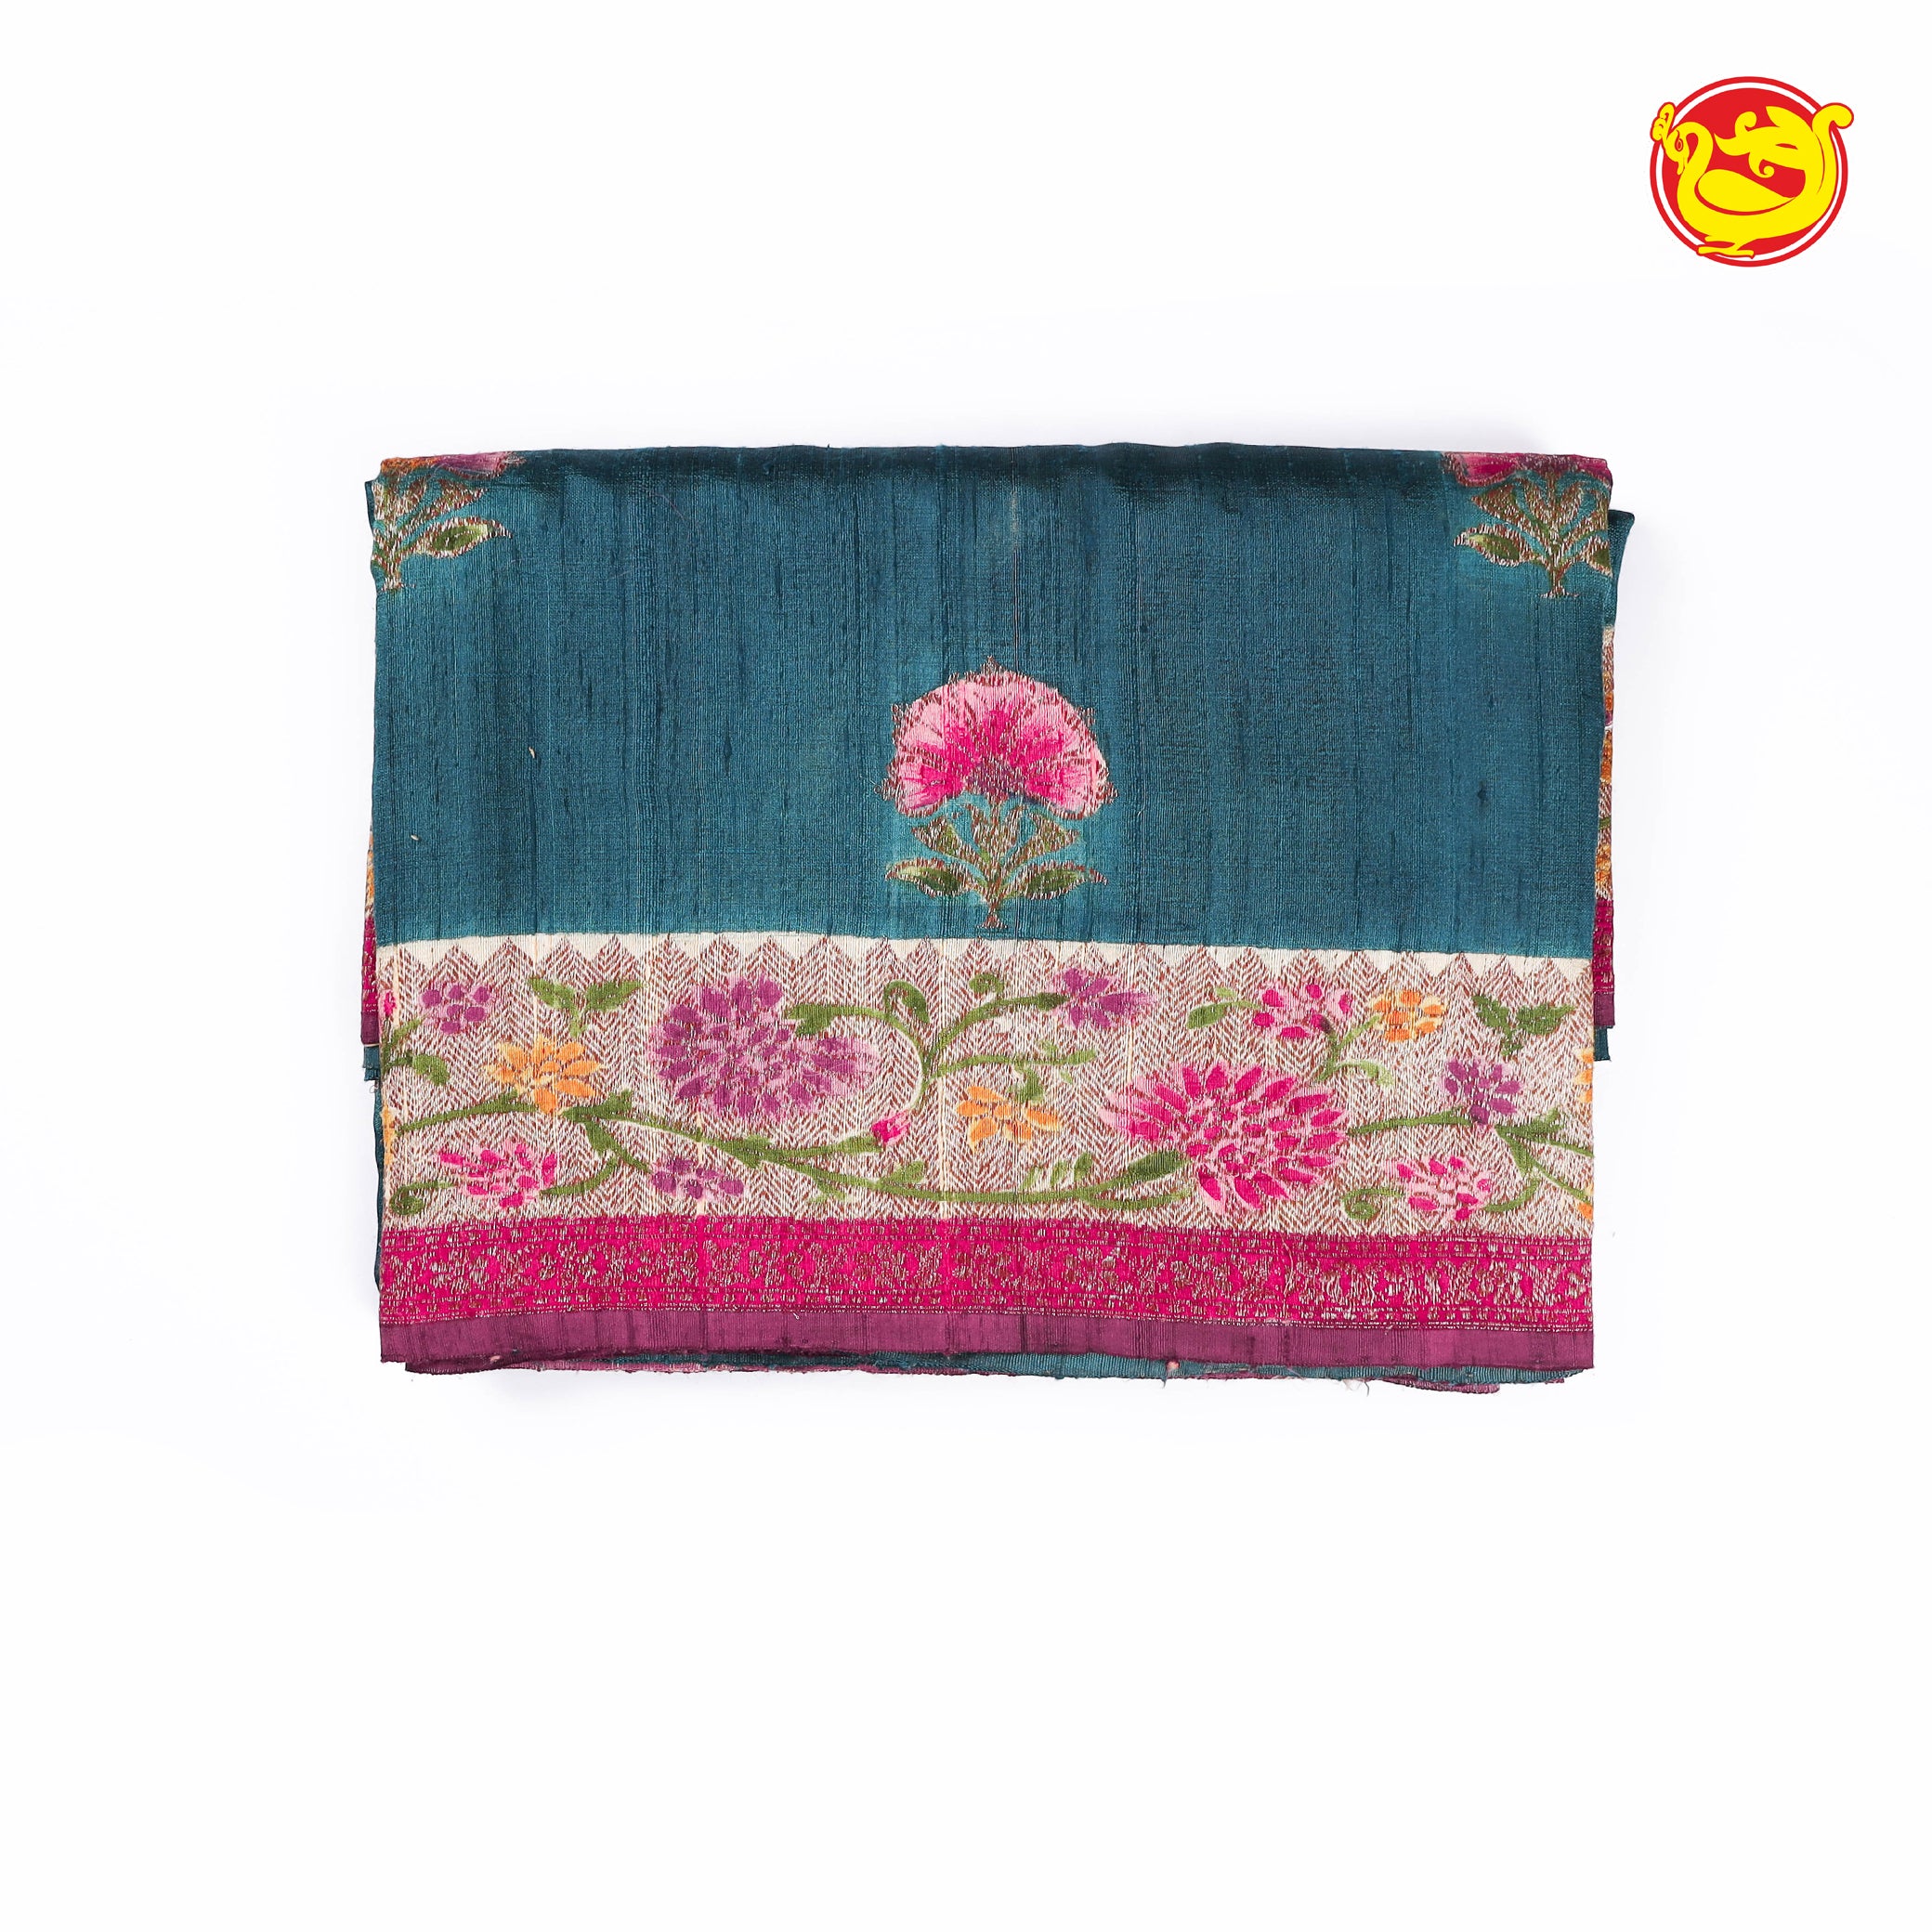 Pure banarasi khadi tussar saree with floral colour block motifs